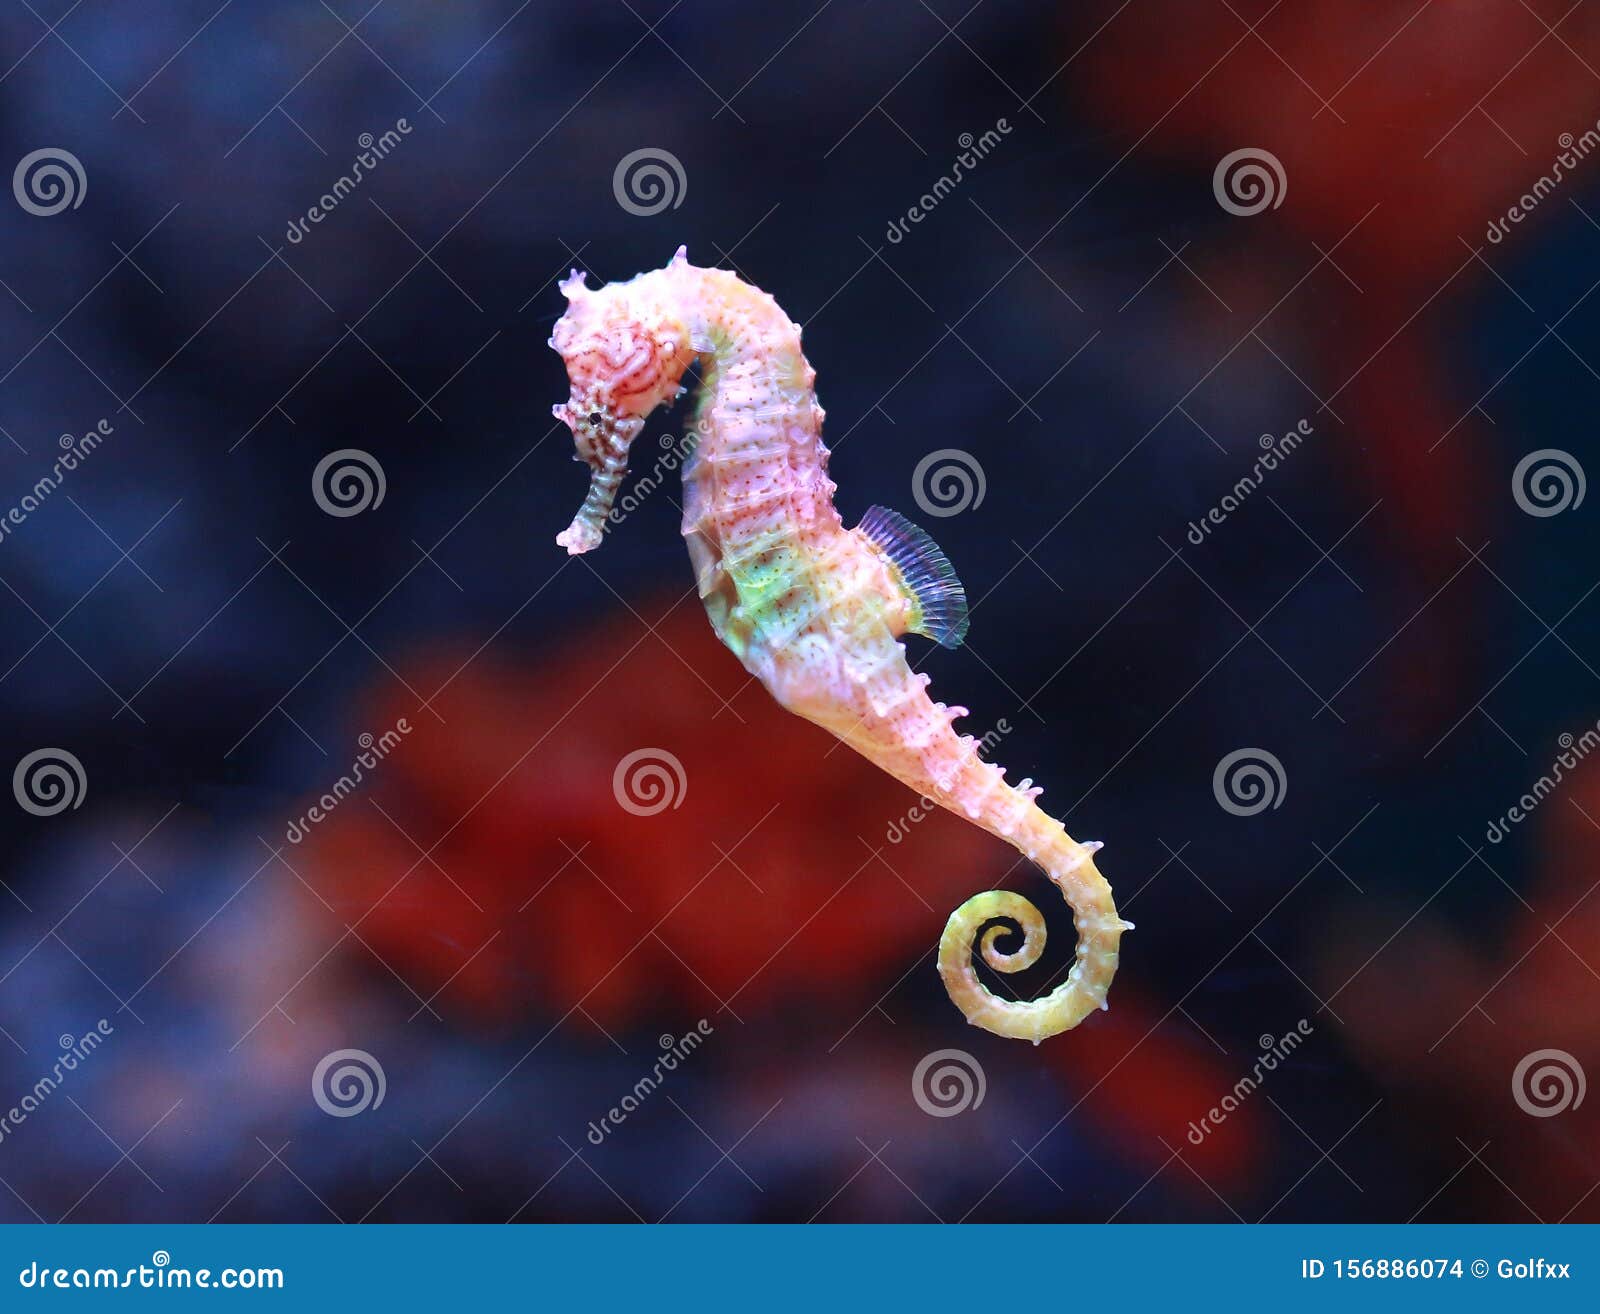 seahorse hippocampus swimming in aquarium tank